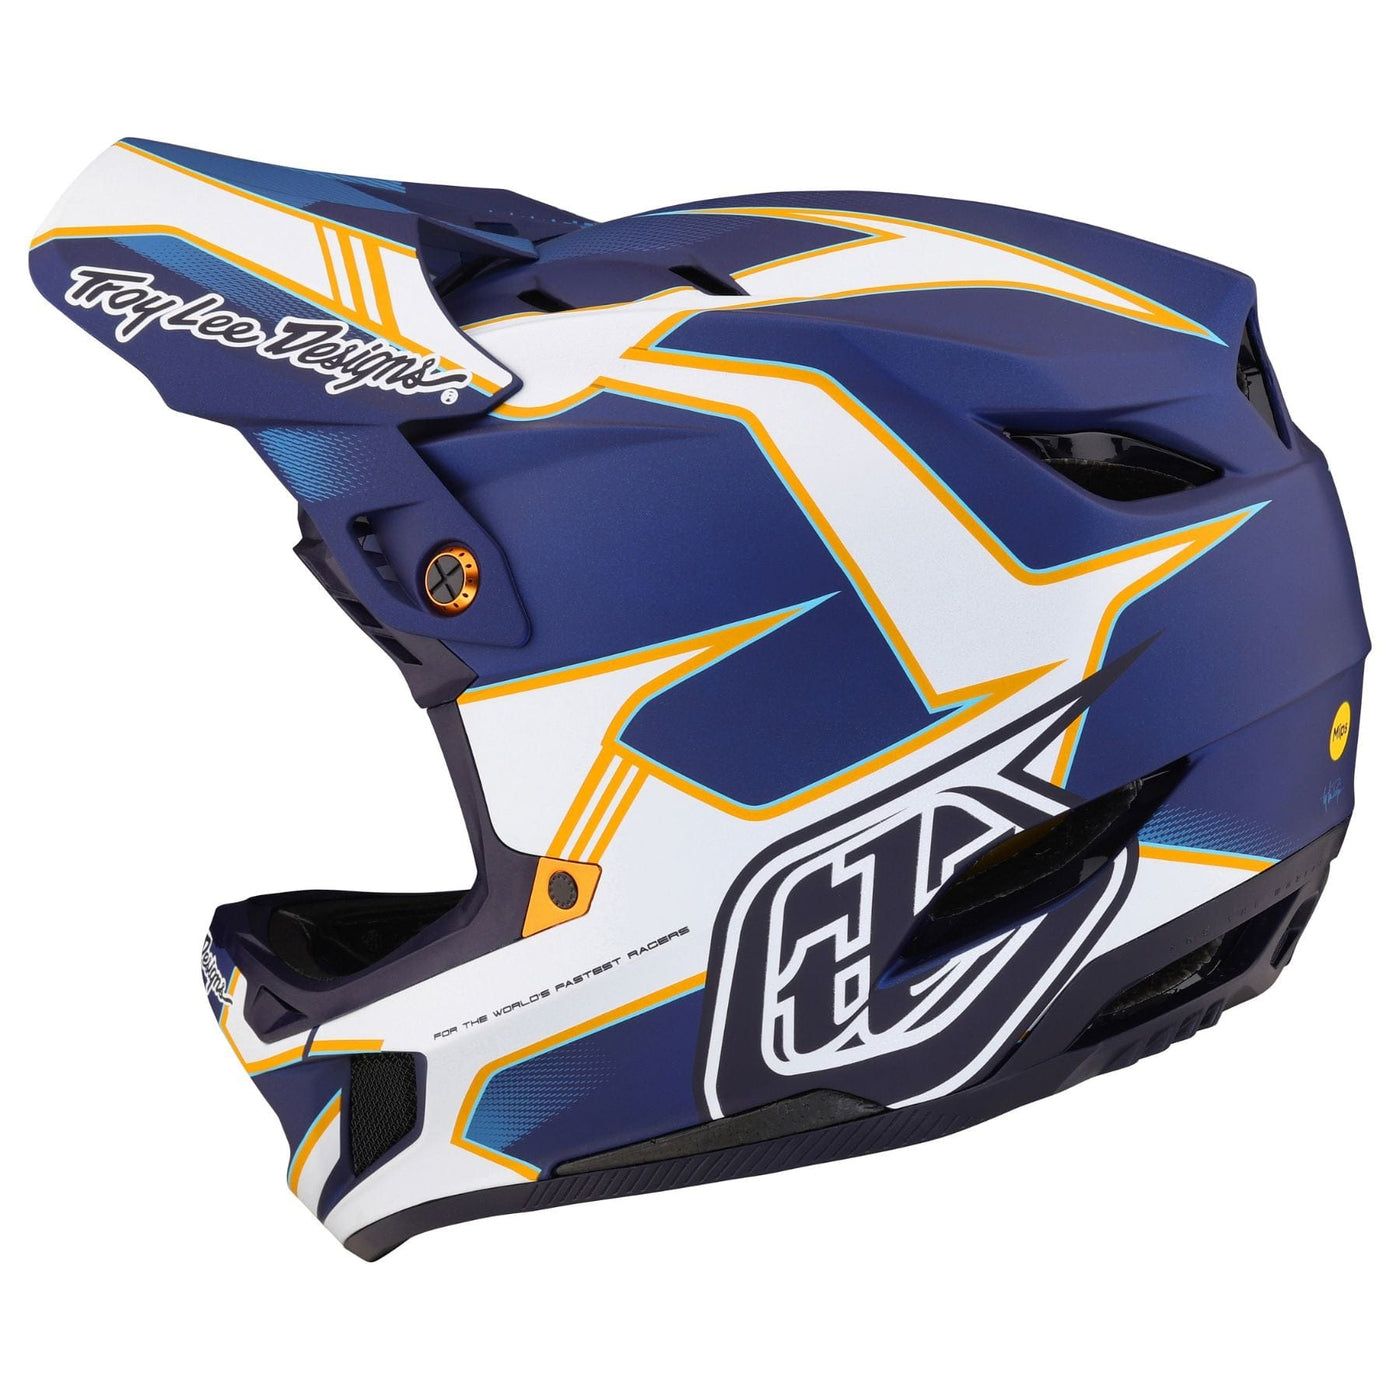 Troy Lee Designs D4 Composite MIPS Helmet Matrix - Blue